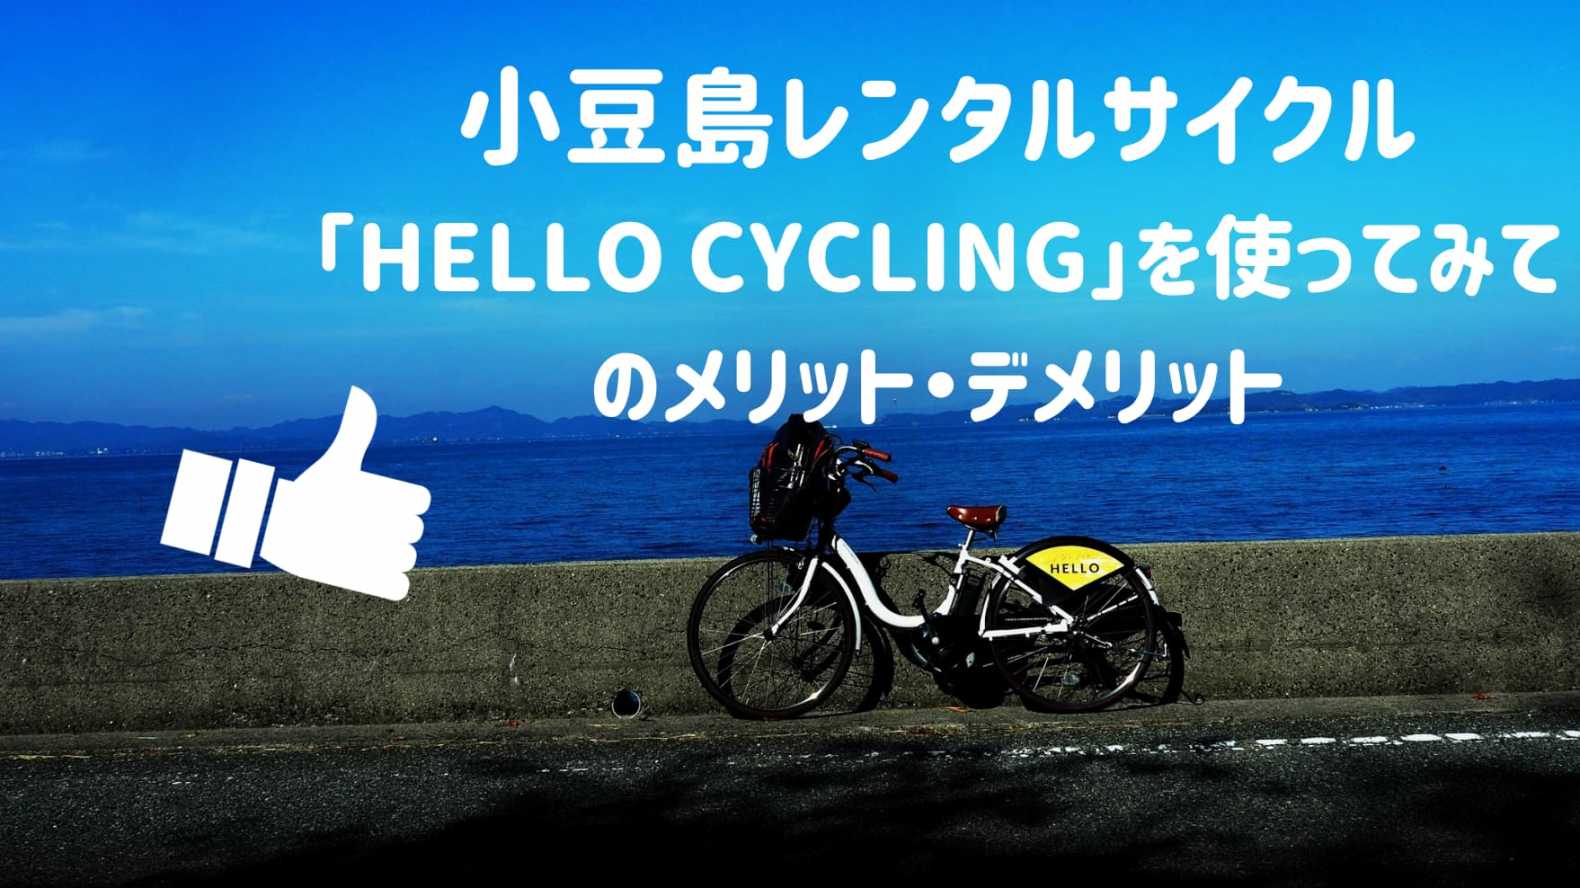 小豆島レンタルサイクル「HELLO CYCLING」を使ってみてのメリット・デメリット